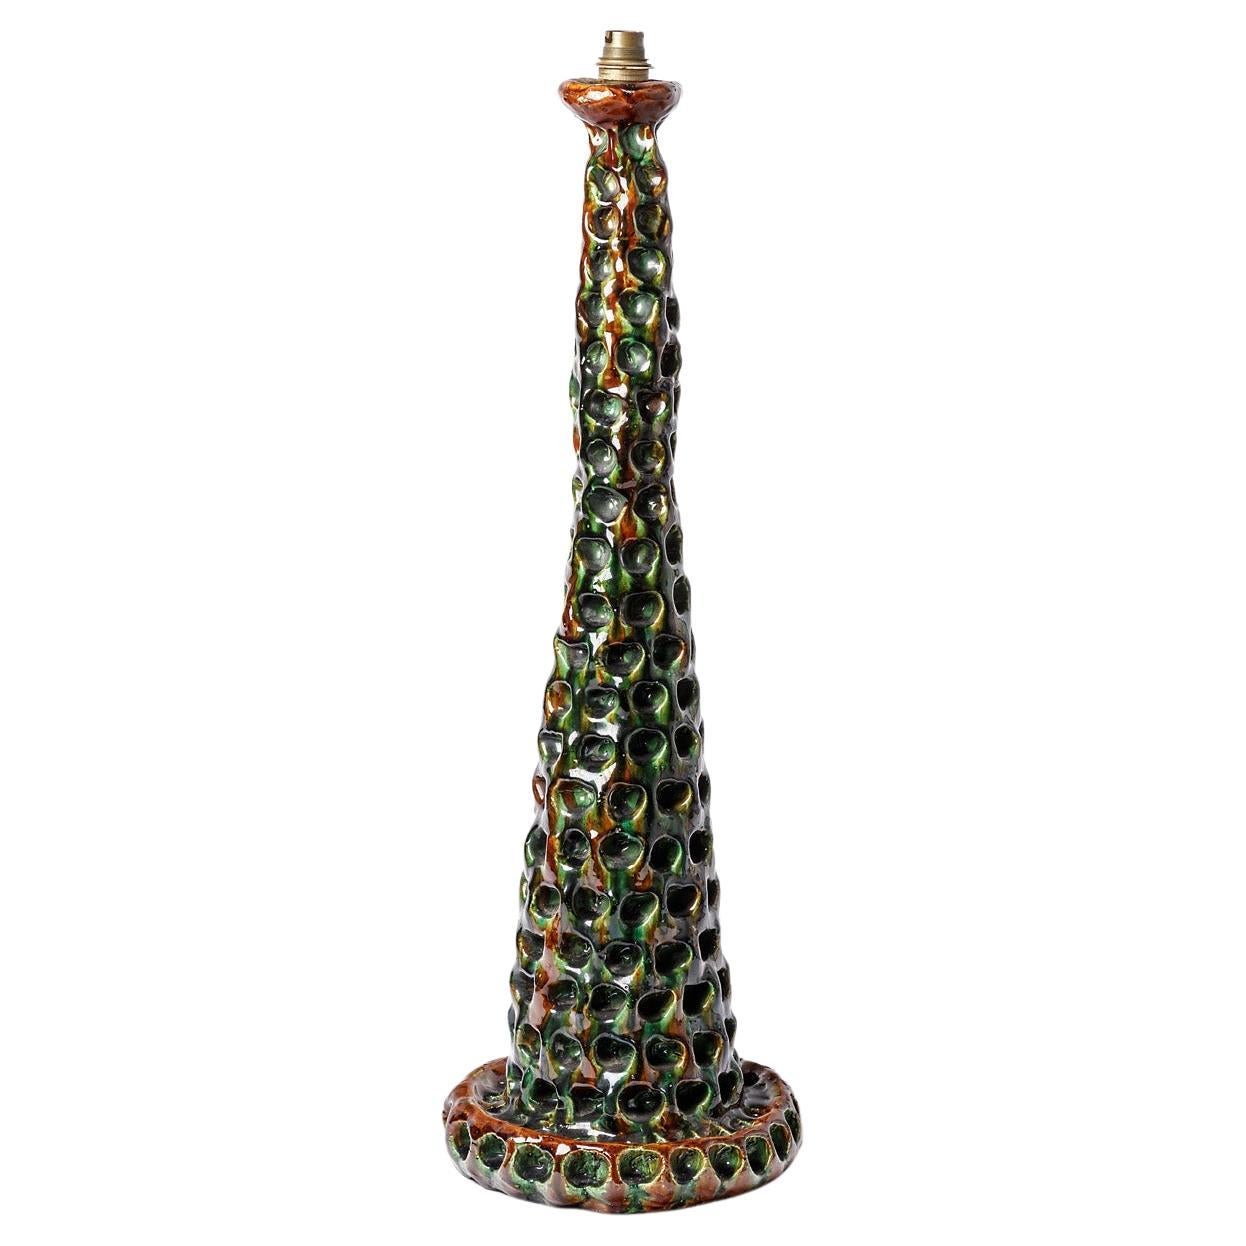 Grande lampe de table en céramique colorée du XXe siècle par Gerlou 1950, pièce unique 68 cm